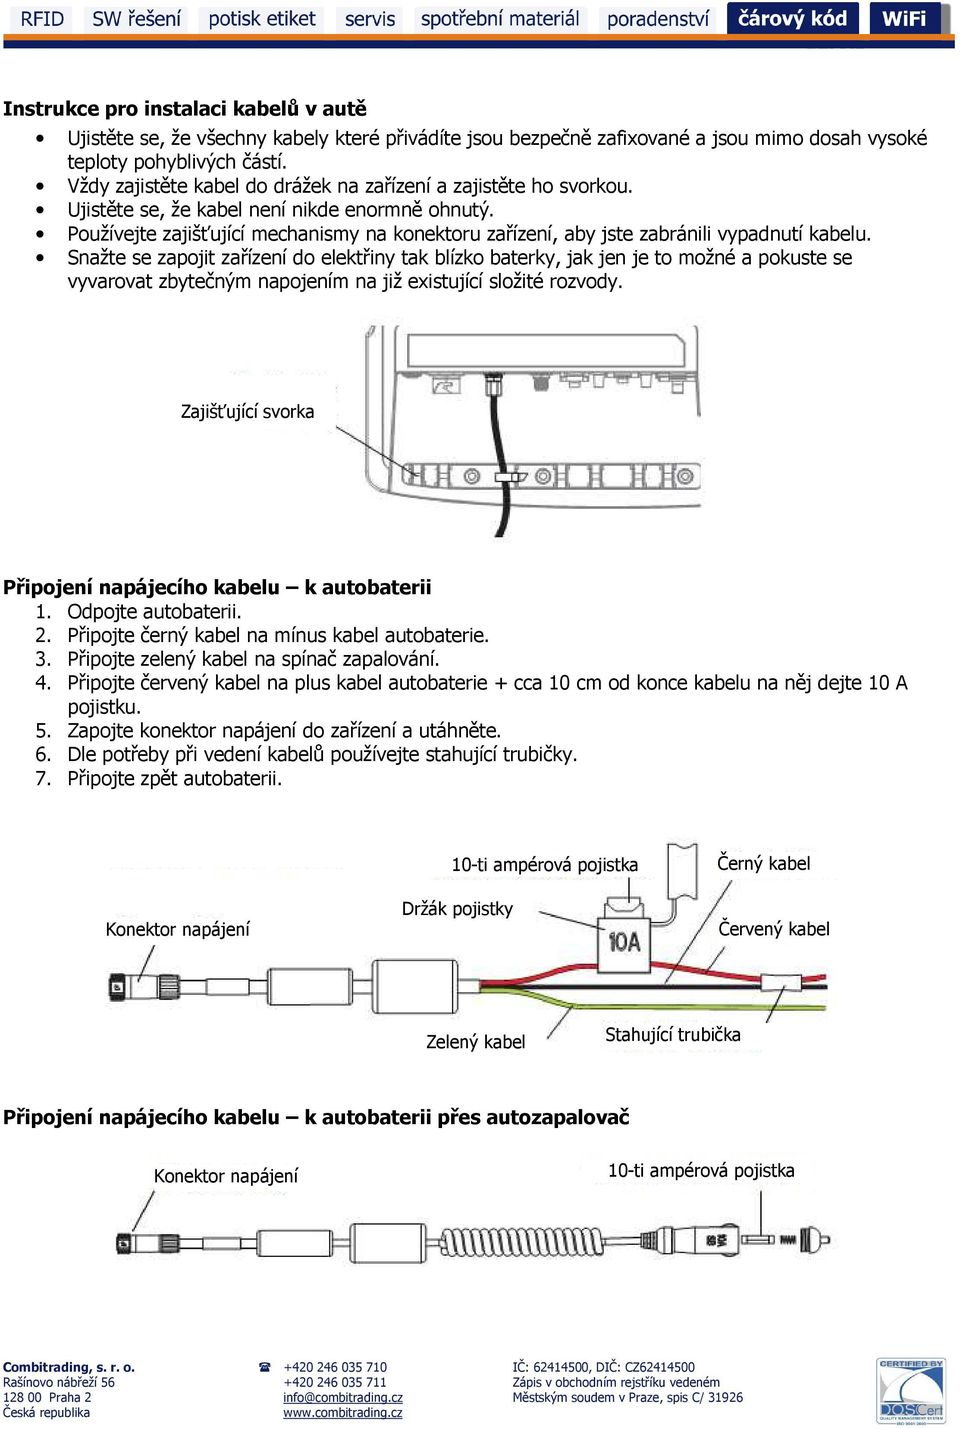 Používejte zajišťující mechanismy na konektoru zařízení, aby jste zabránili vypadnutí kabelu.